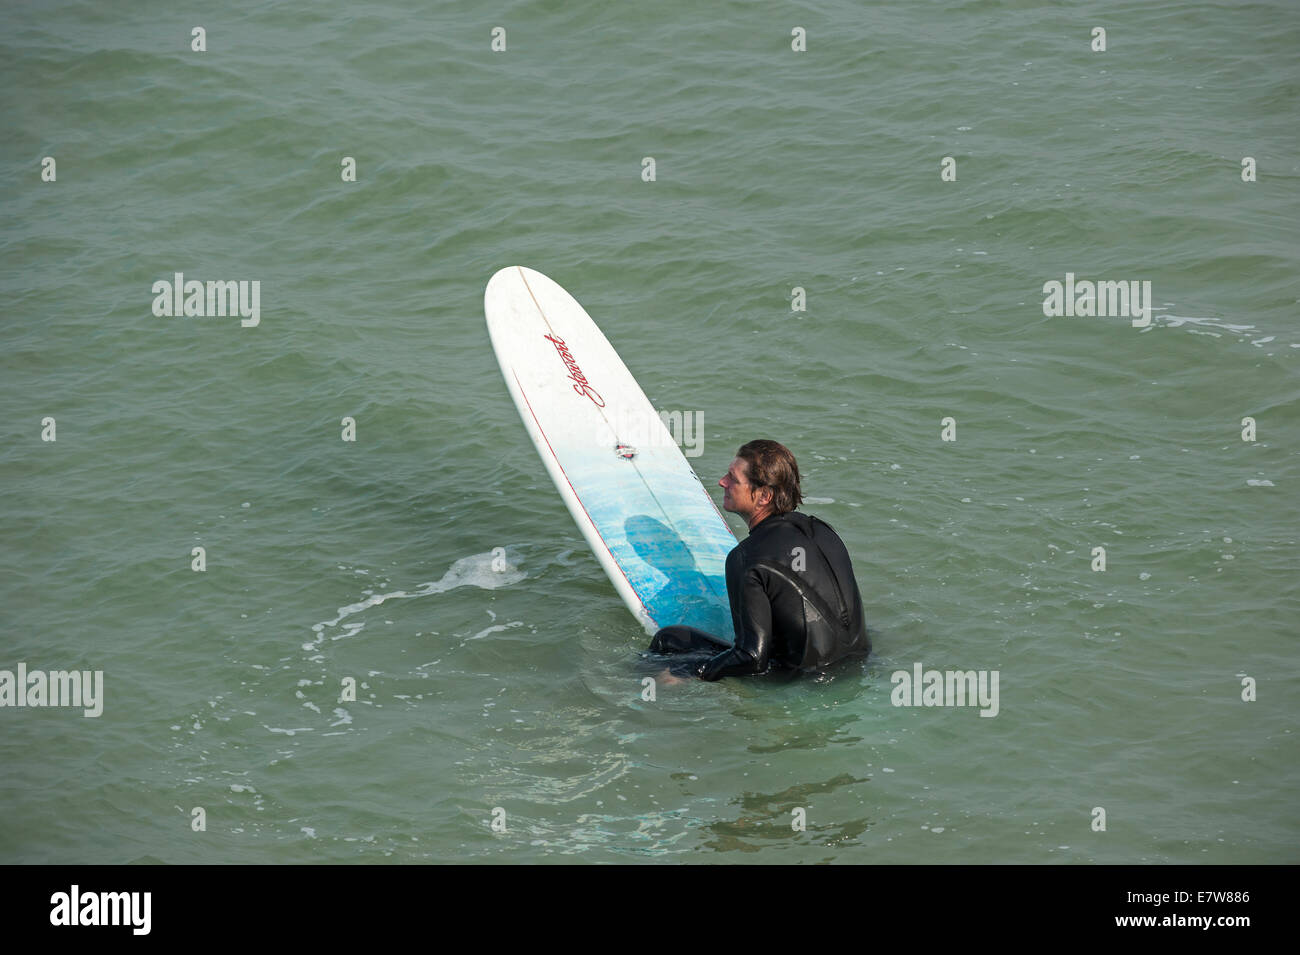 Surfer en traje sentado en su tabla de surf, esperando una ola grande / rompedor para navegar a lo largo de la costa del Mar del Norte Foto de stock